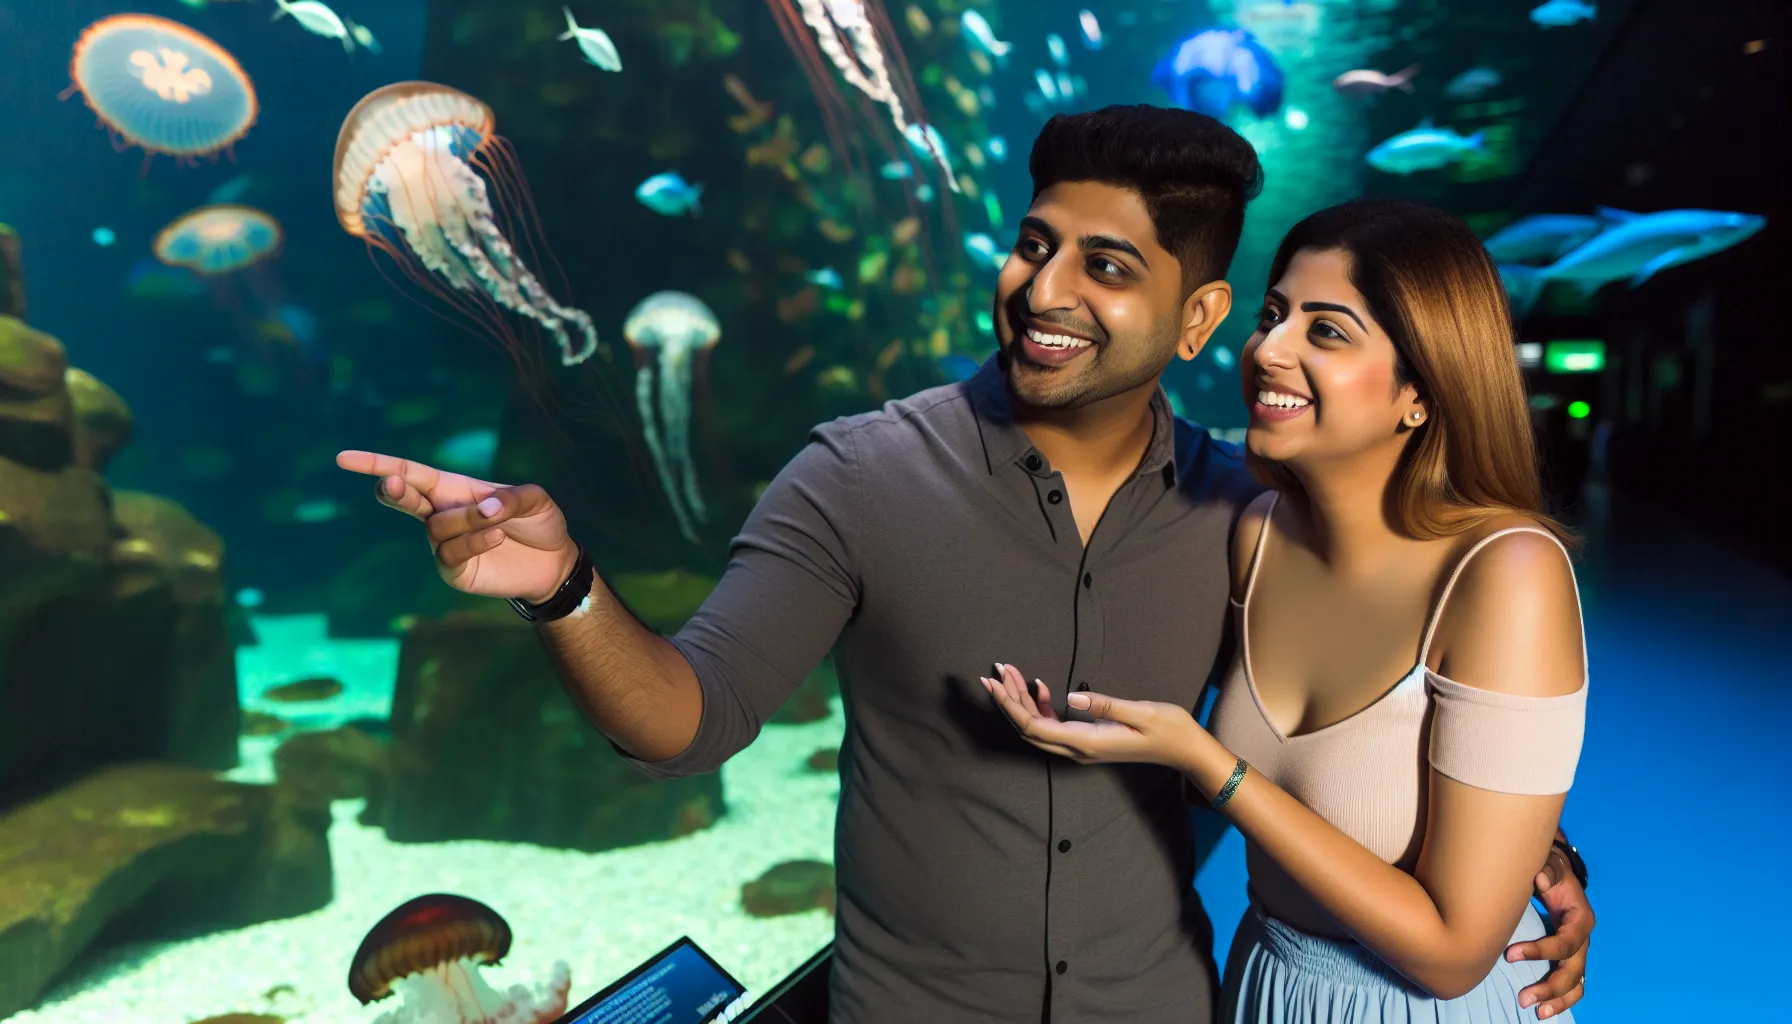 Couple admiring marine life at an aquarium